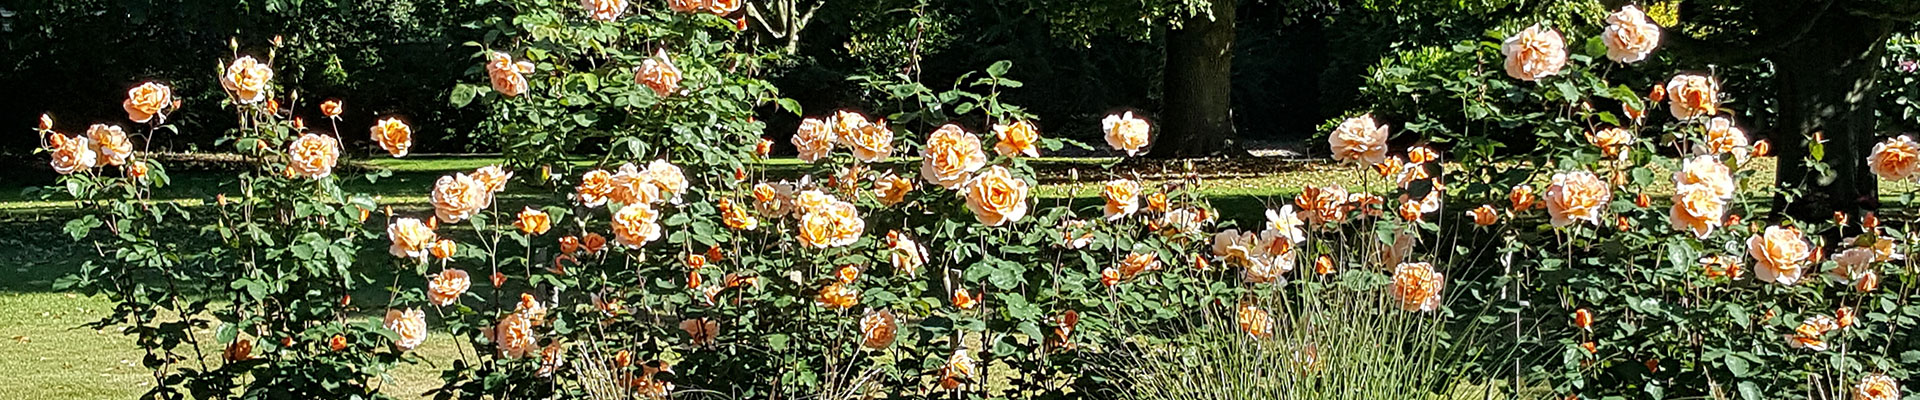 Photograph of orange flowering roses in the crematorium gardens